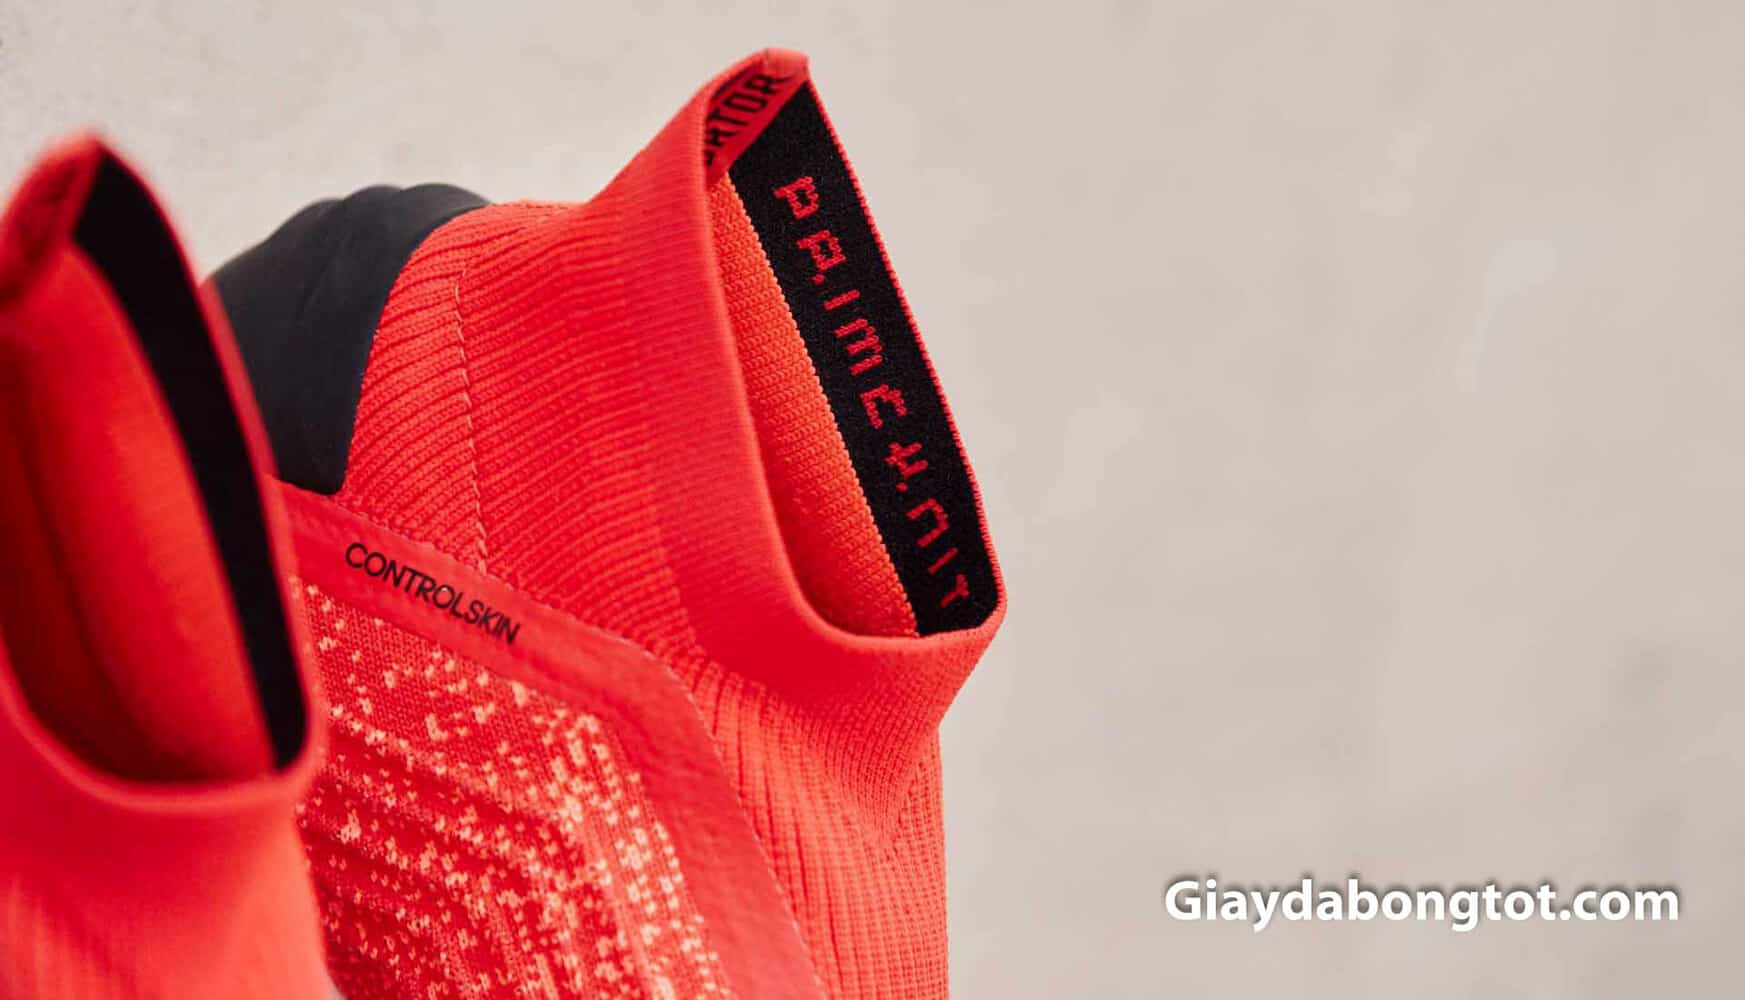 Chiếc cổ cao ôm chân của giày đá bóng Adidas Predator 19+ được thiết kế bằng vải thun cao cấp co giãn tốt